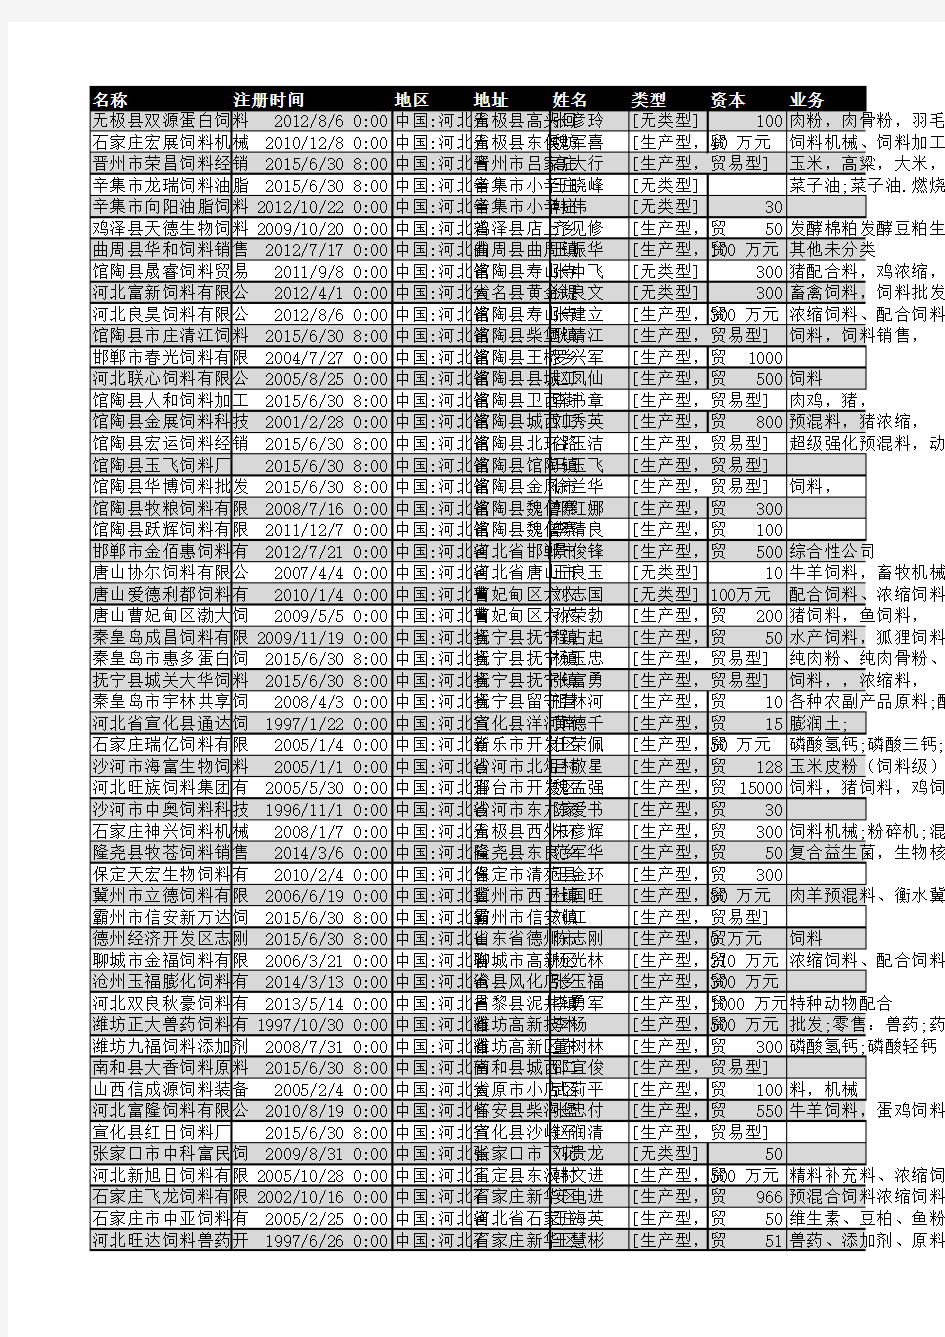 2018年河北省饲料行业企业名录3135家